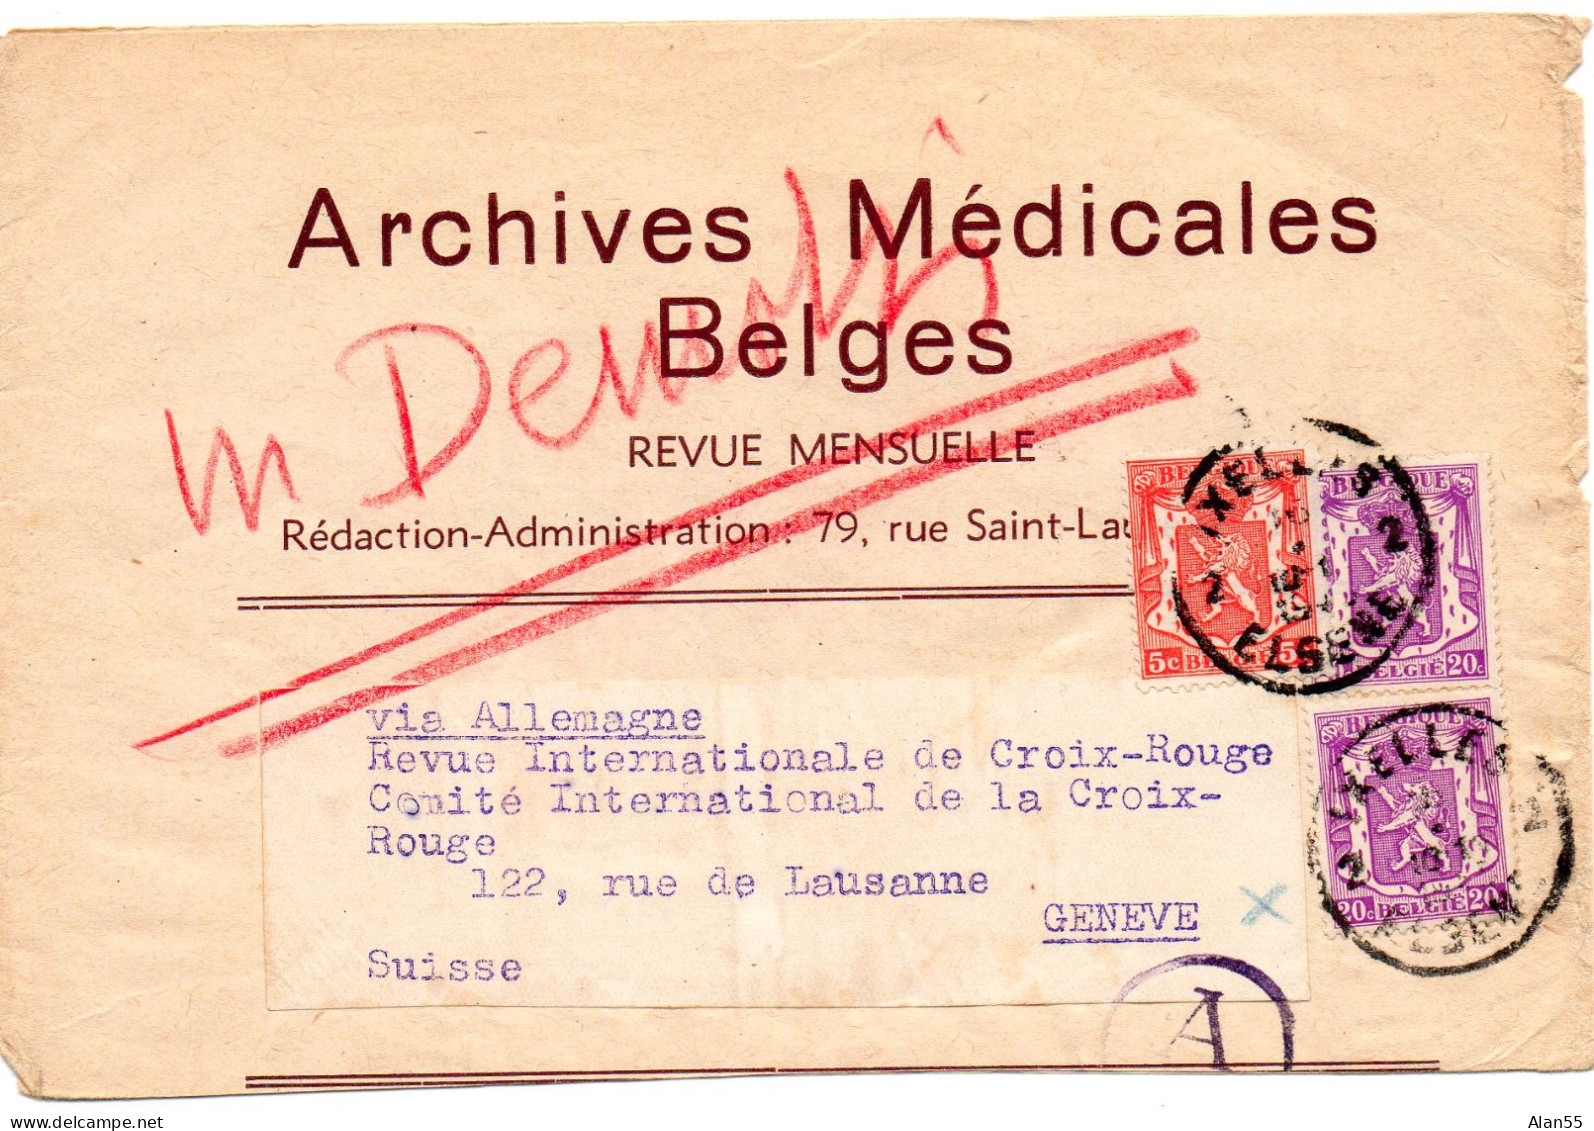 BELGIQUE.1941. "ARCHIVES MEDICALES BELGES". BANDE JOURNAL. CENSURE ALLEMANDE POUR LA SUISSE.Verso: Publicité. - Periódicos [JO]